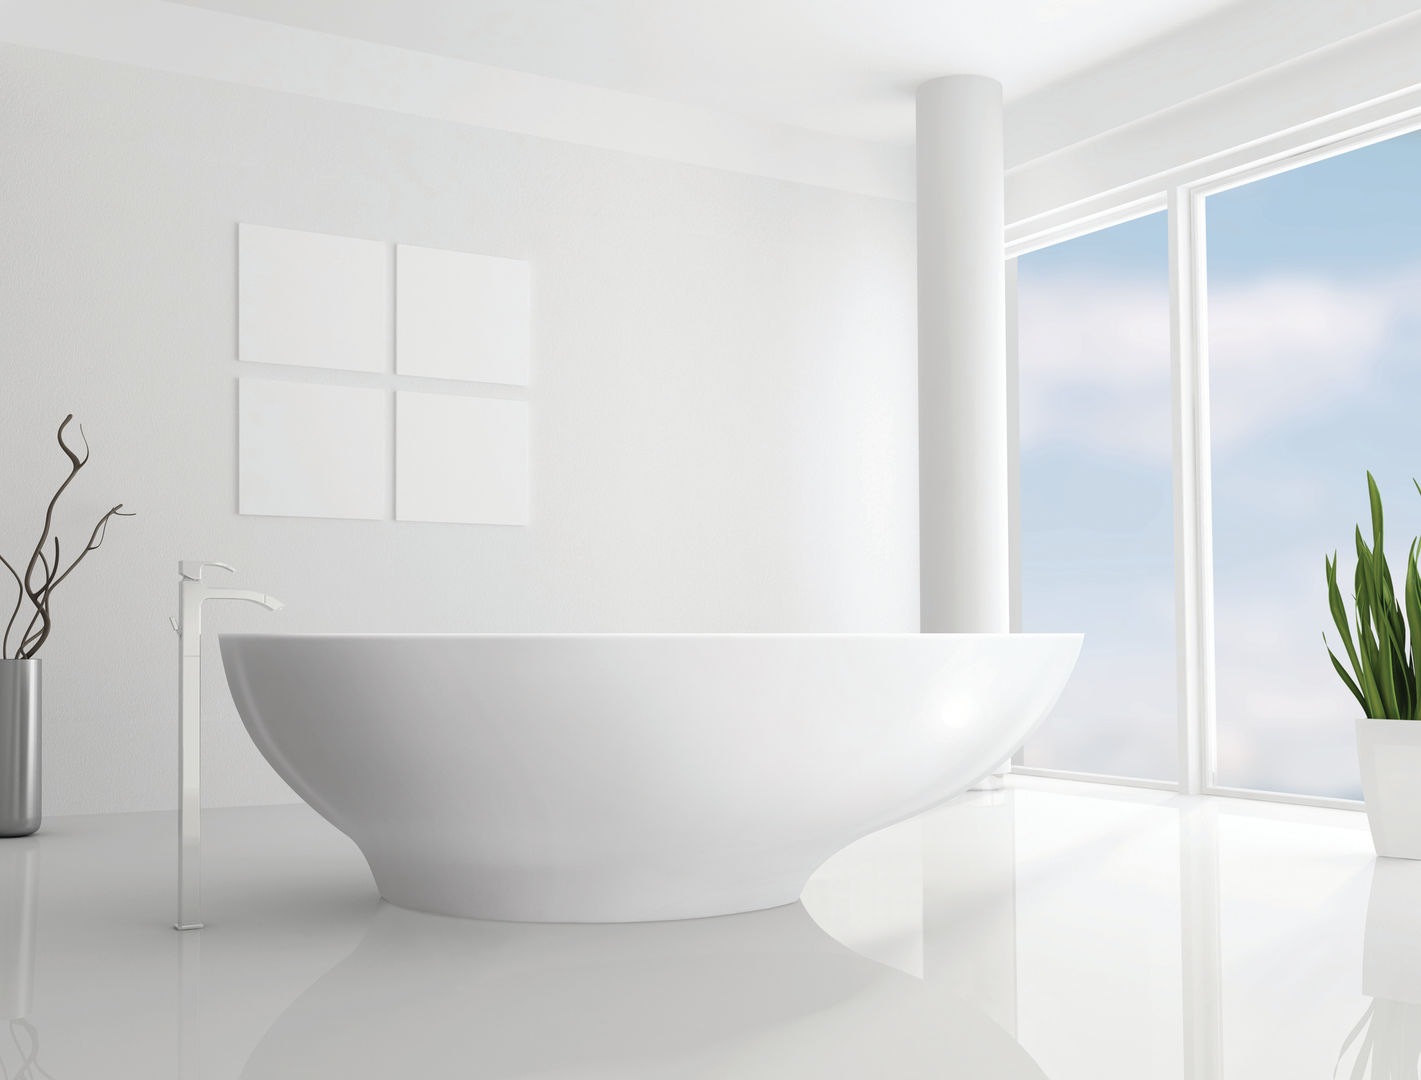 Gio Bath BC Designs Baños de estilo minimalista Bañeras y duchas